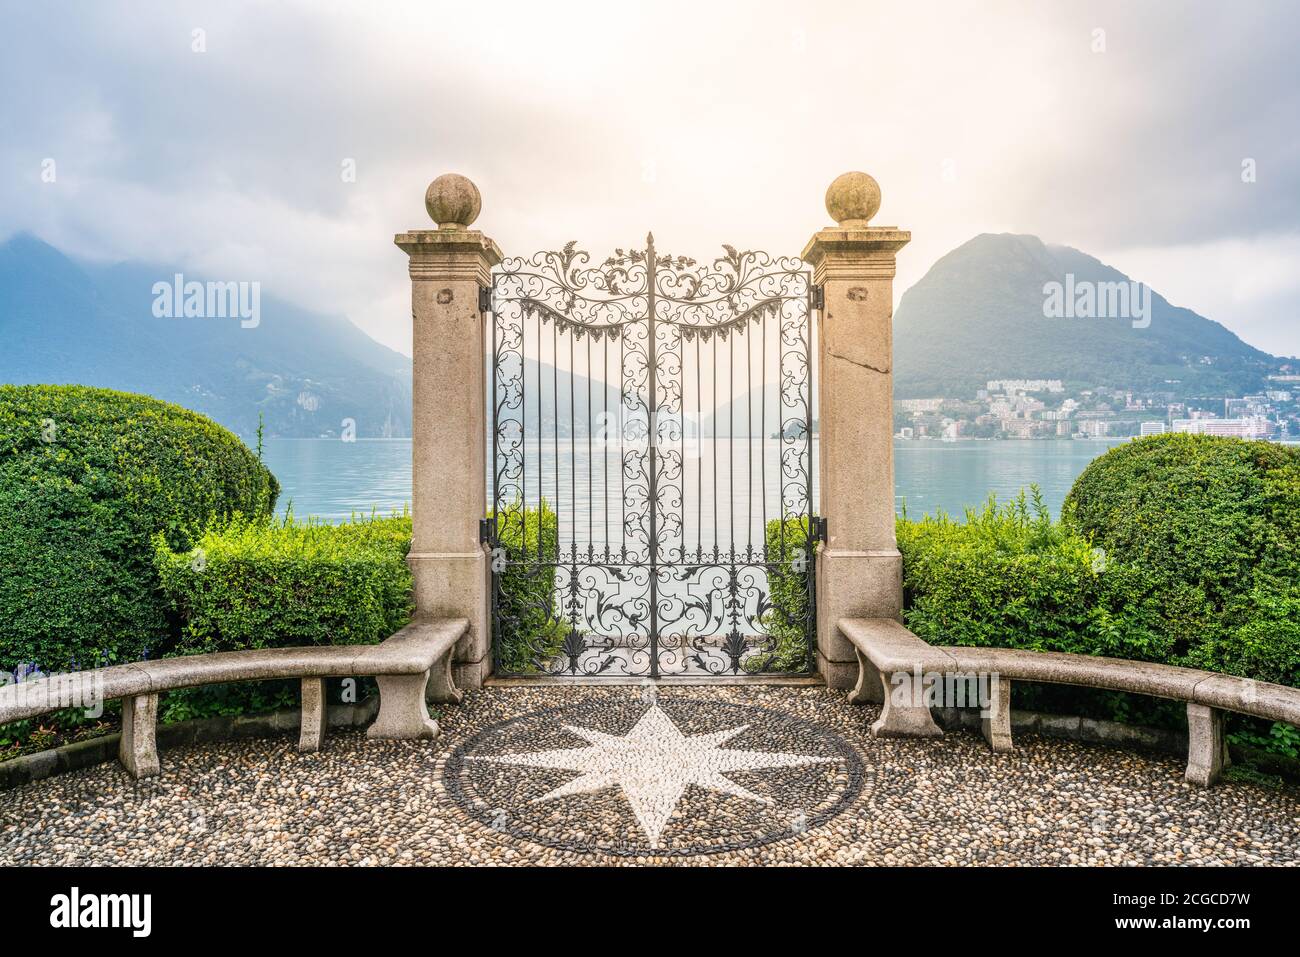 Ancienne porte en fer forgé sur les rives du lac de Lugano à Parco Civico Jardin public de Ciani et lumière spectaculaire à Lugano Tessin Suisse Banque D'Images